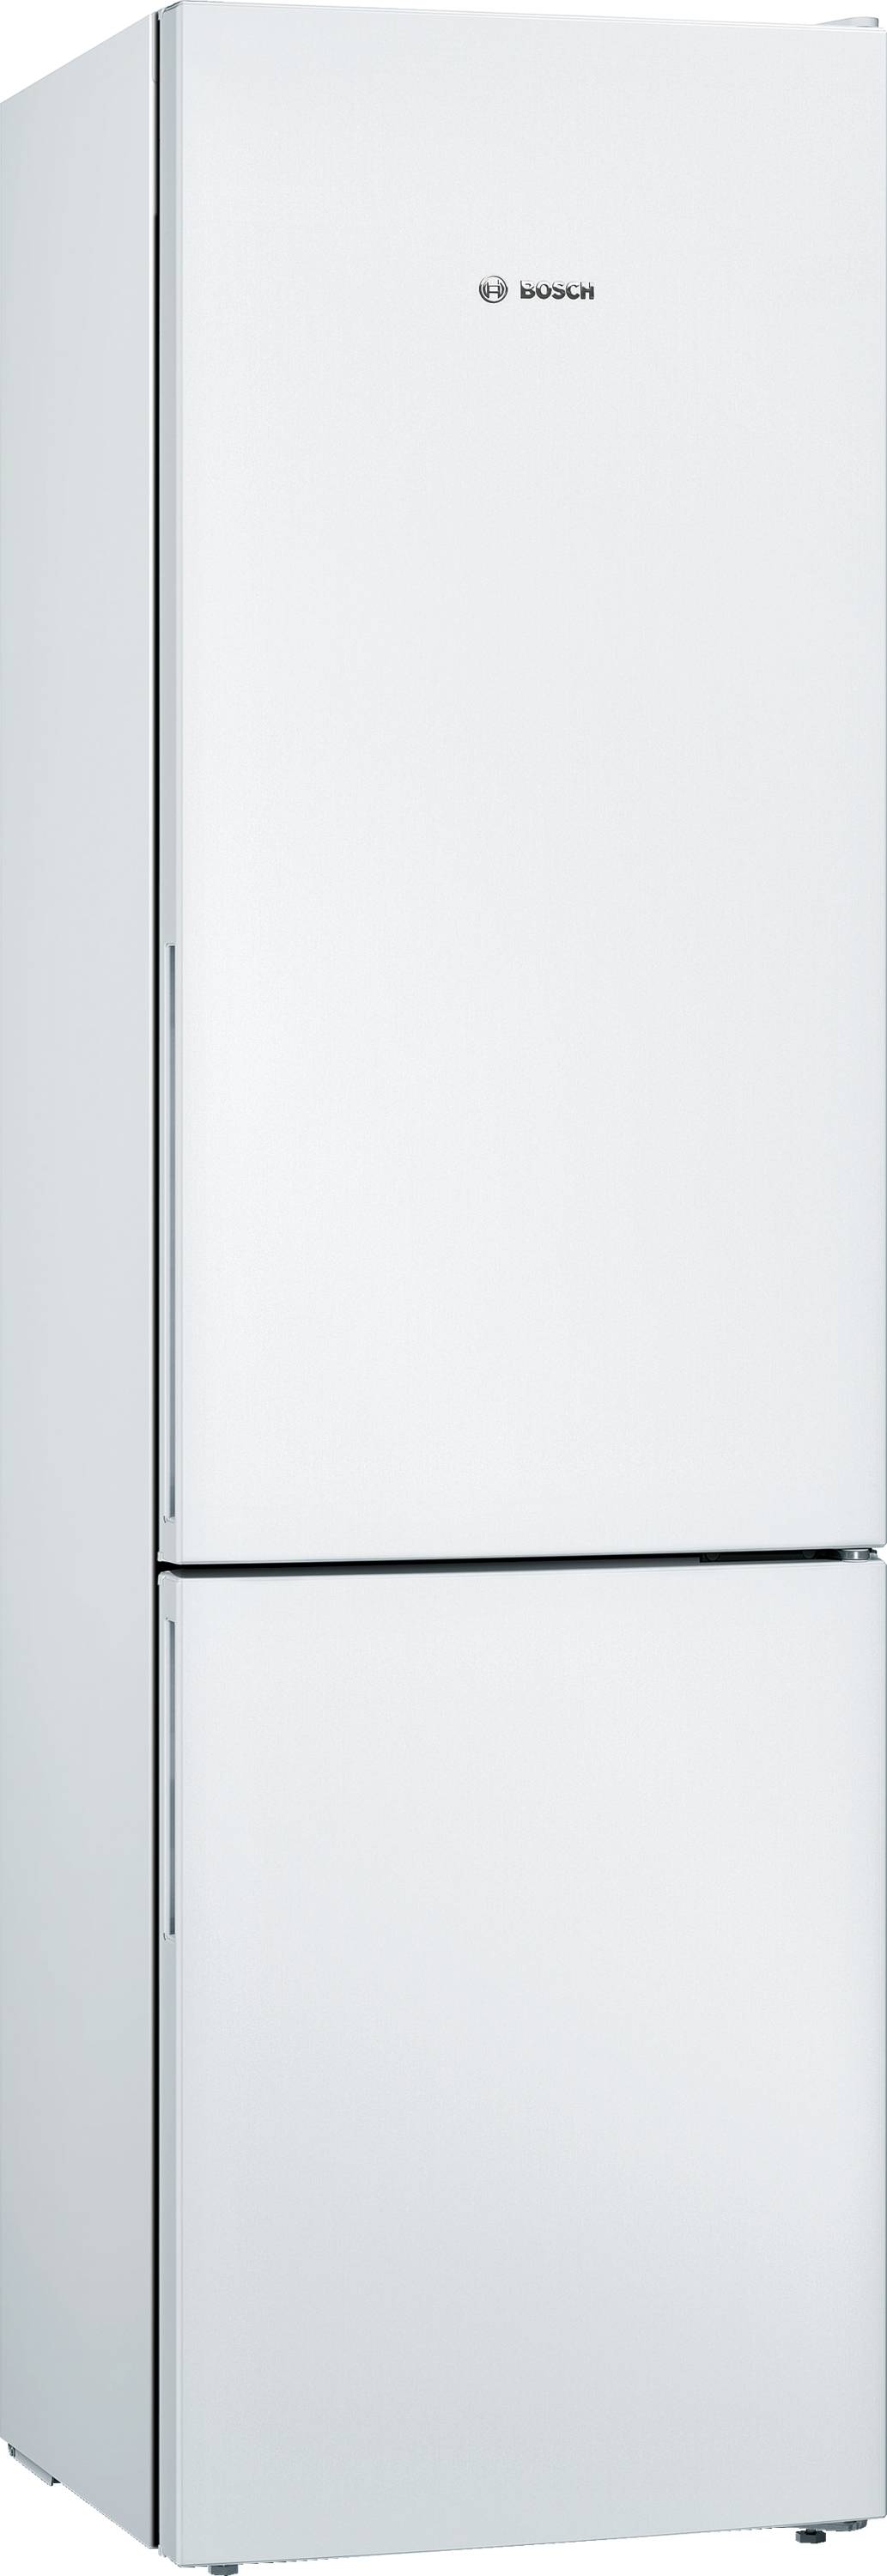 KGV39VWEA Combină frigorifică independentă 201 x 60 cm Alb, 5 ANI GARANTIE, Clasa Energetica E